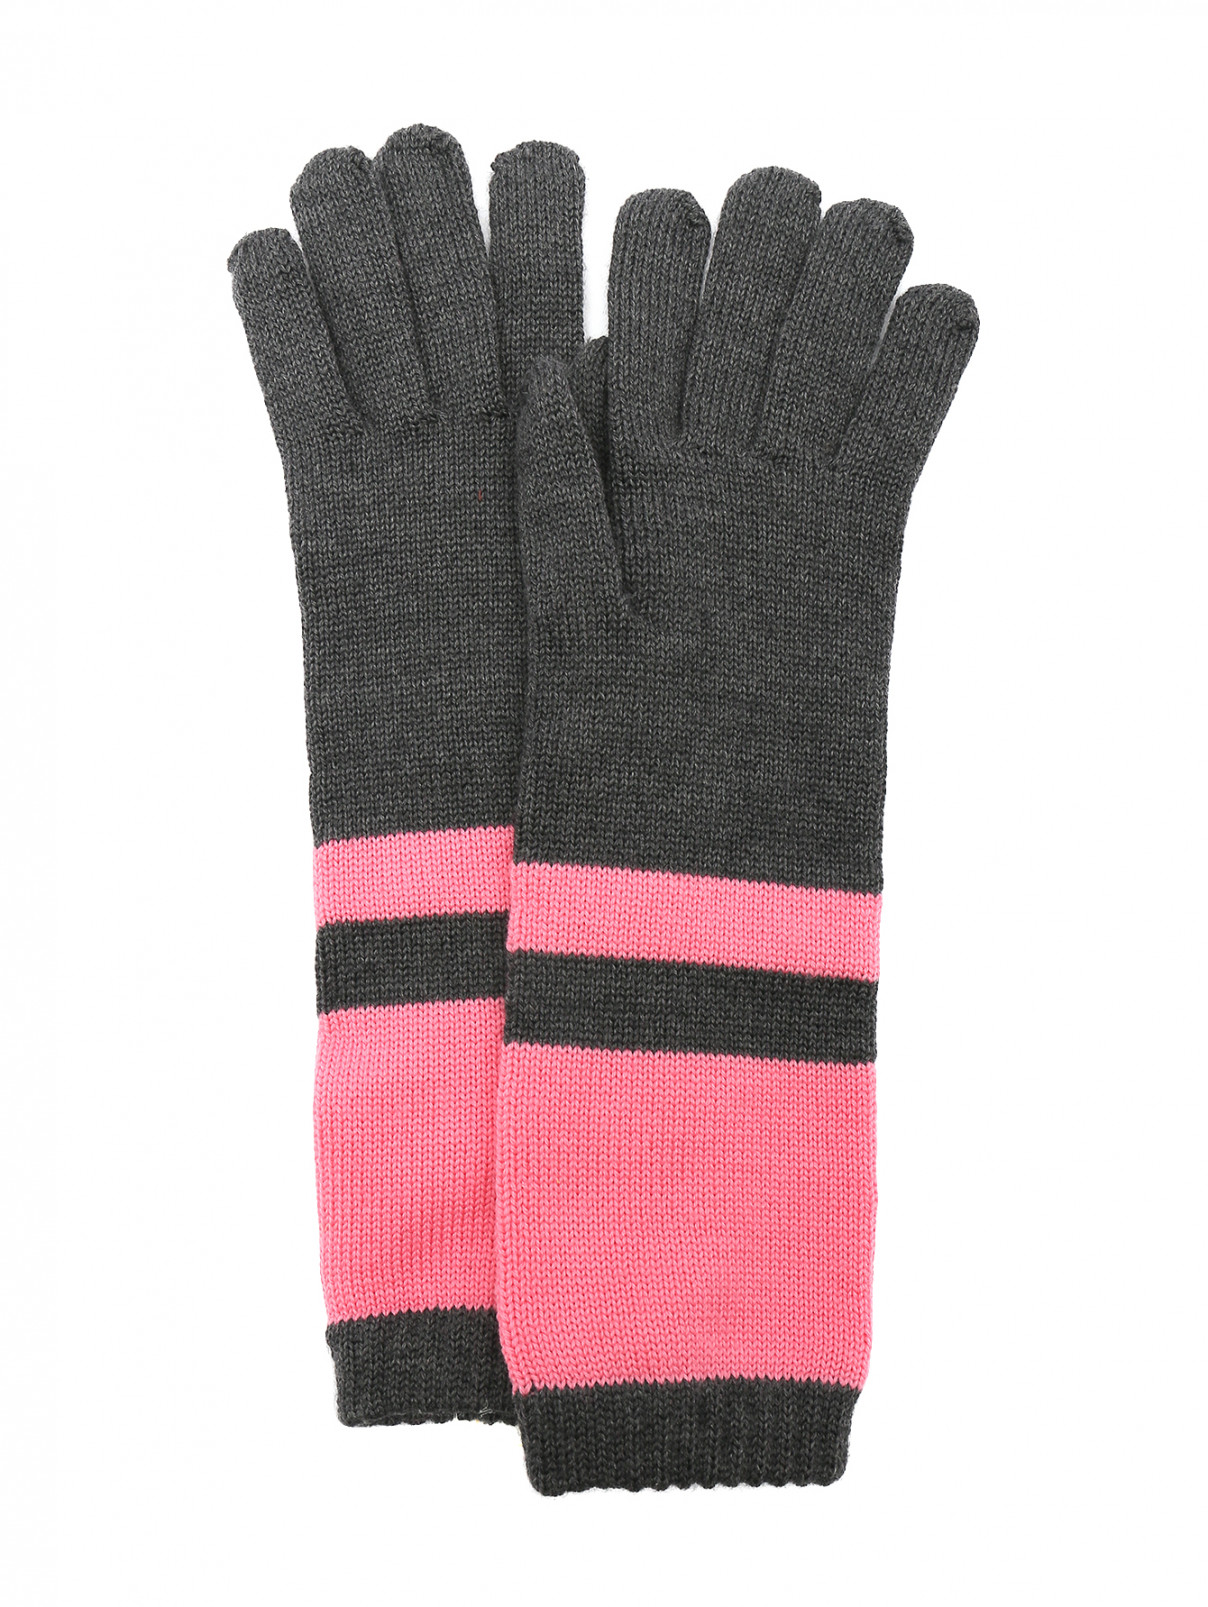 Перчатки из шерсти с узором Isola Marras  –  Общий вид  – Цвет:  Серый